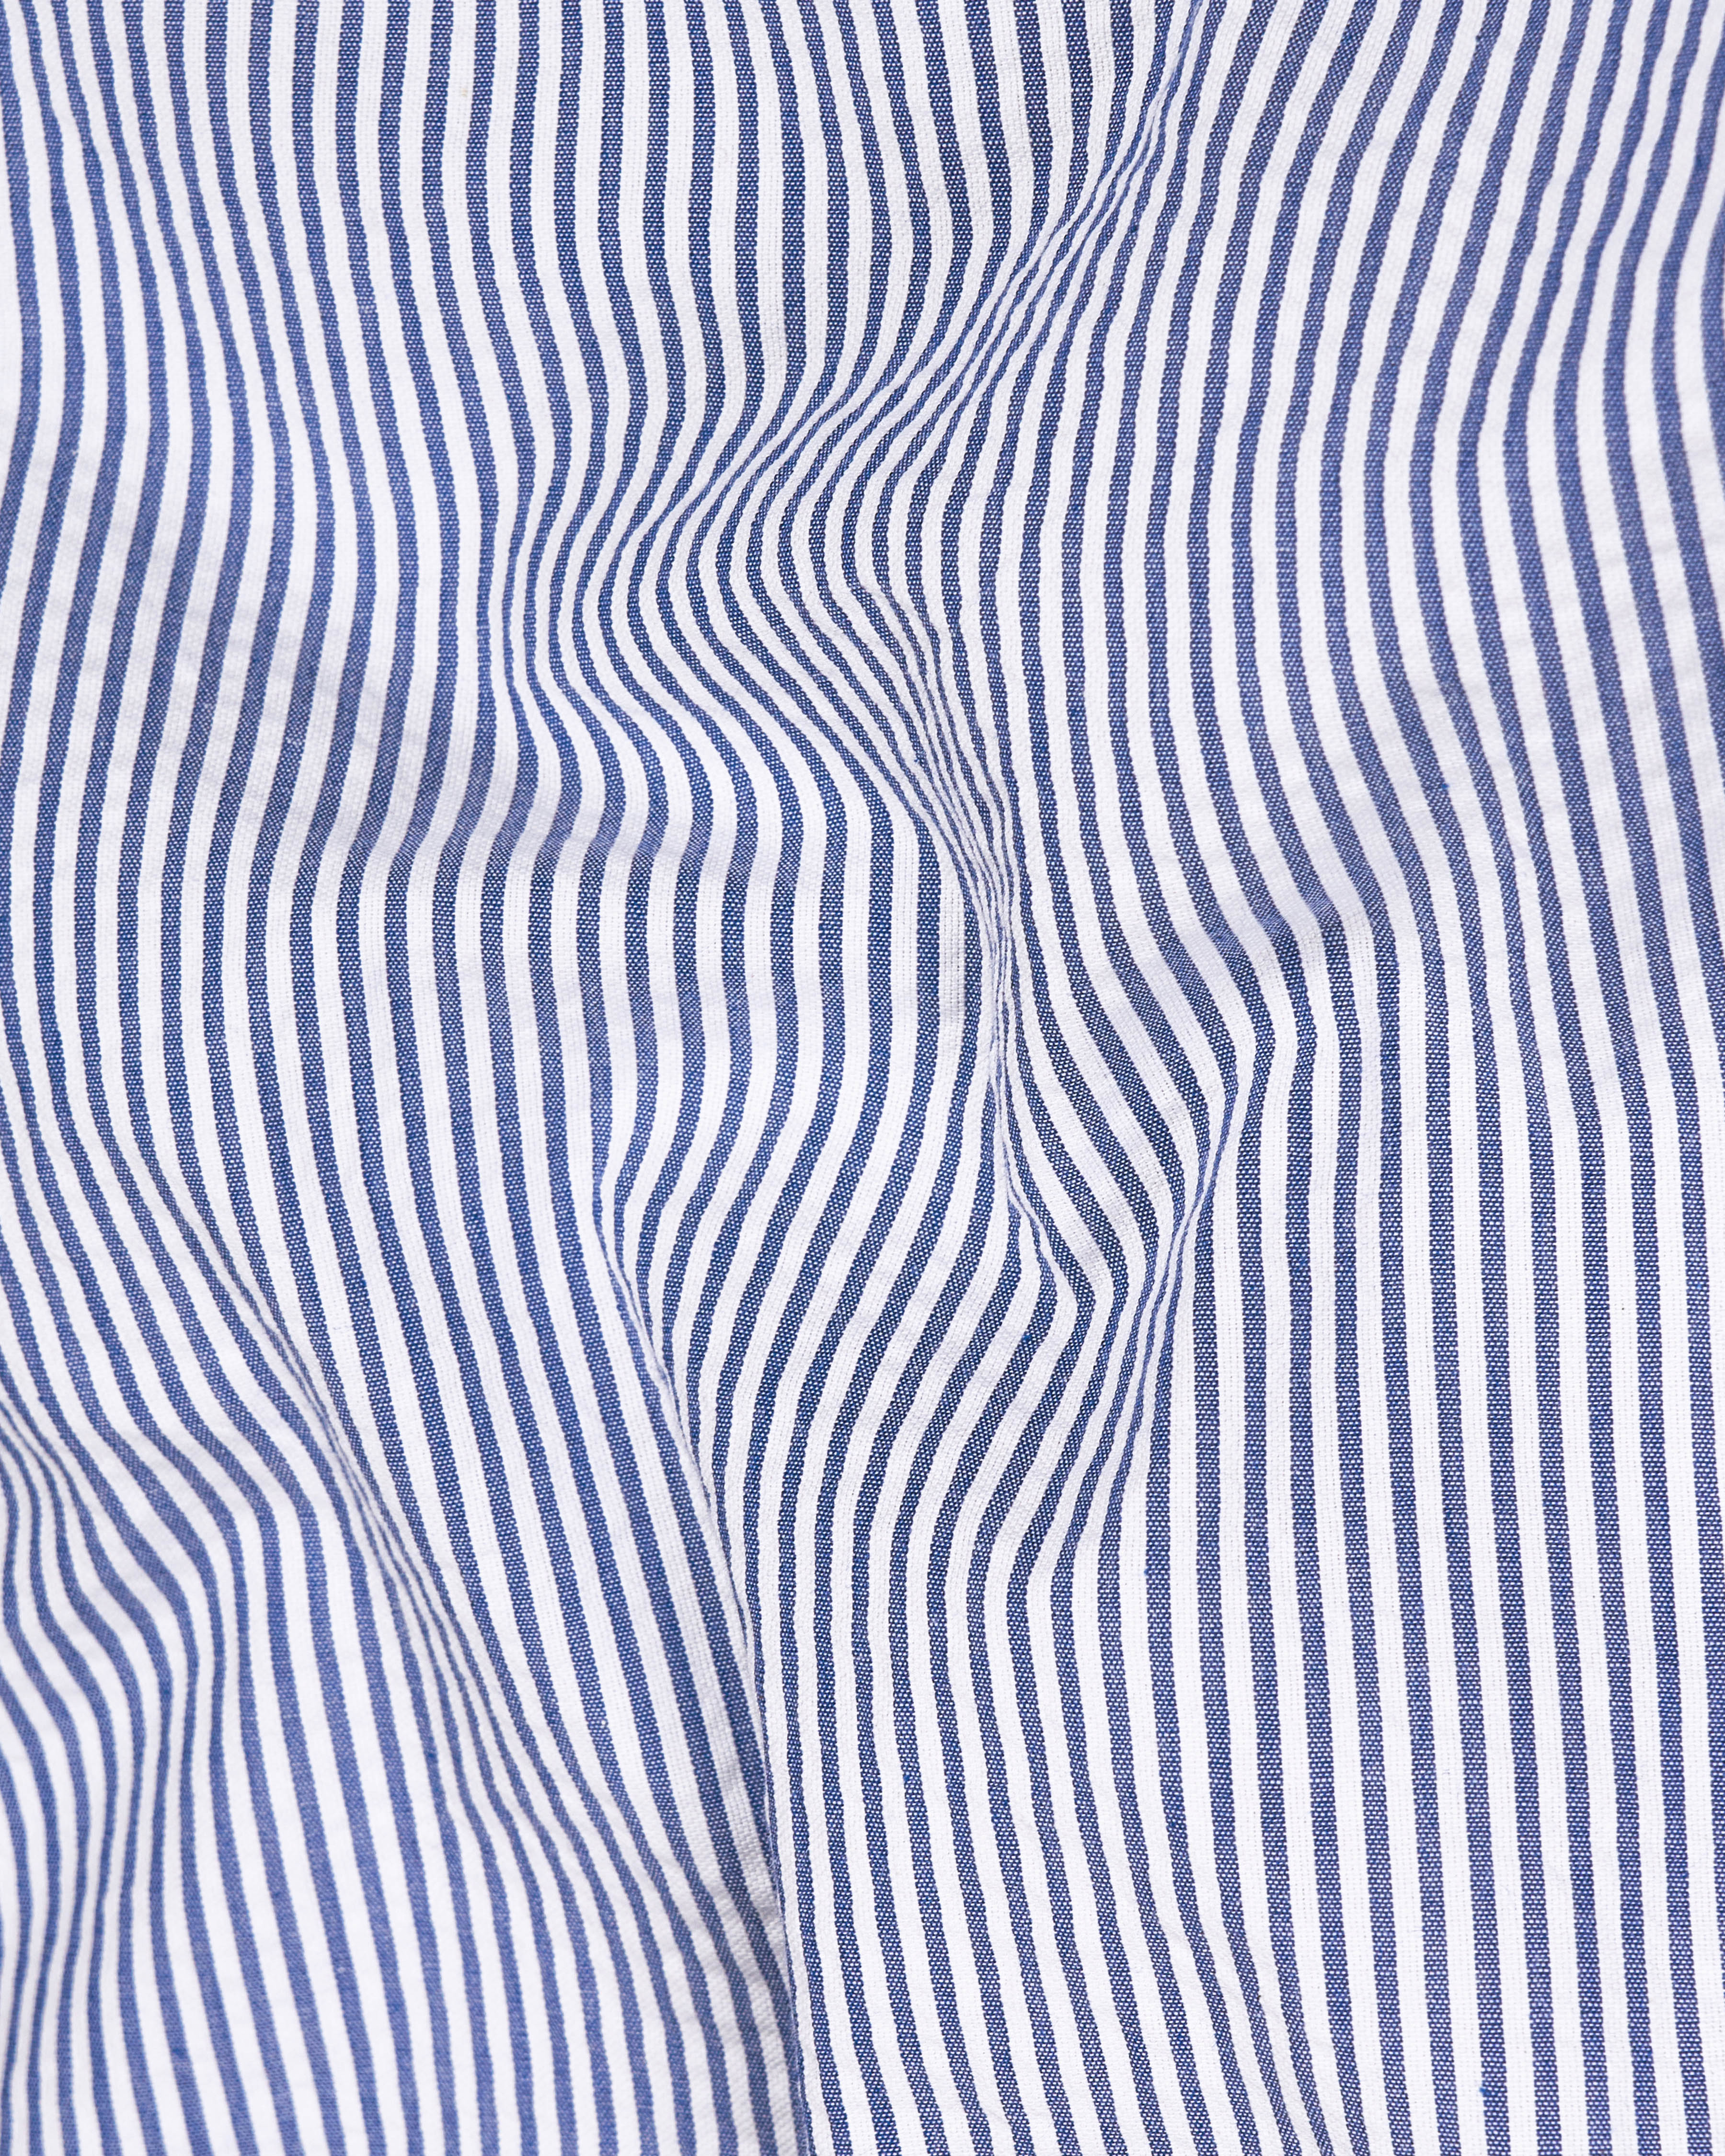 Bayoux Blue with White Pin Striped Seersucker Giza Cotton Shirt 9224-BD-BLE-38,9224-BD-BLE-H-38,9224-BD-BLE-39,9224-BD-BLE-H-39,9224-BD-BLE-40,9224-BD-BLE-H-40,9224-BD-BLE-42,9224-BD-BLE-H-42,9224-BD-BLE-44,9224-BD-BLE-H-44,9224-BD-BLE-46,9224-BD-BLE-H-46,9224-BD-BLE-48,9224-BD-BLE-H-48,9224-BD-BLE-50,9224-BD-BLE-H-50,9224-BD-BLE-52,9224-BD-BLE-H-52